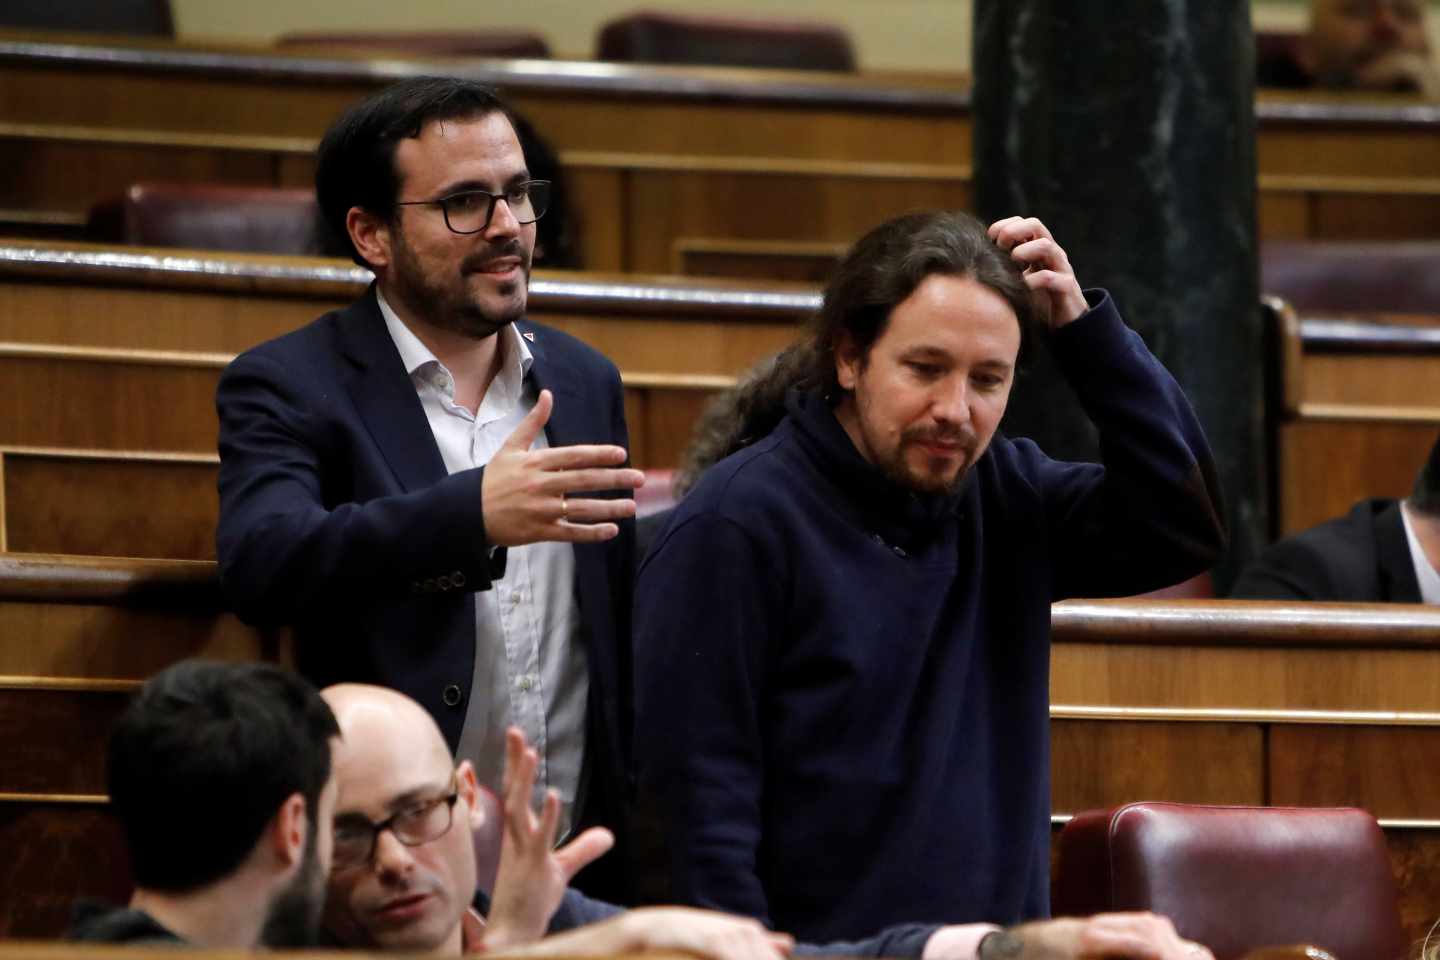 Alberto Garzón y Pablo Iglesias, en el Congreso.